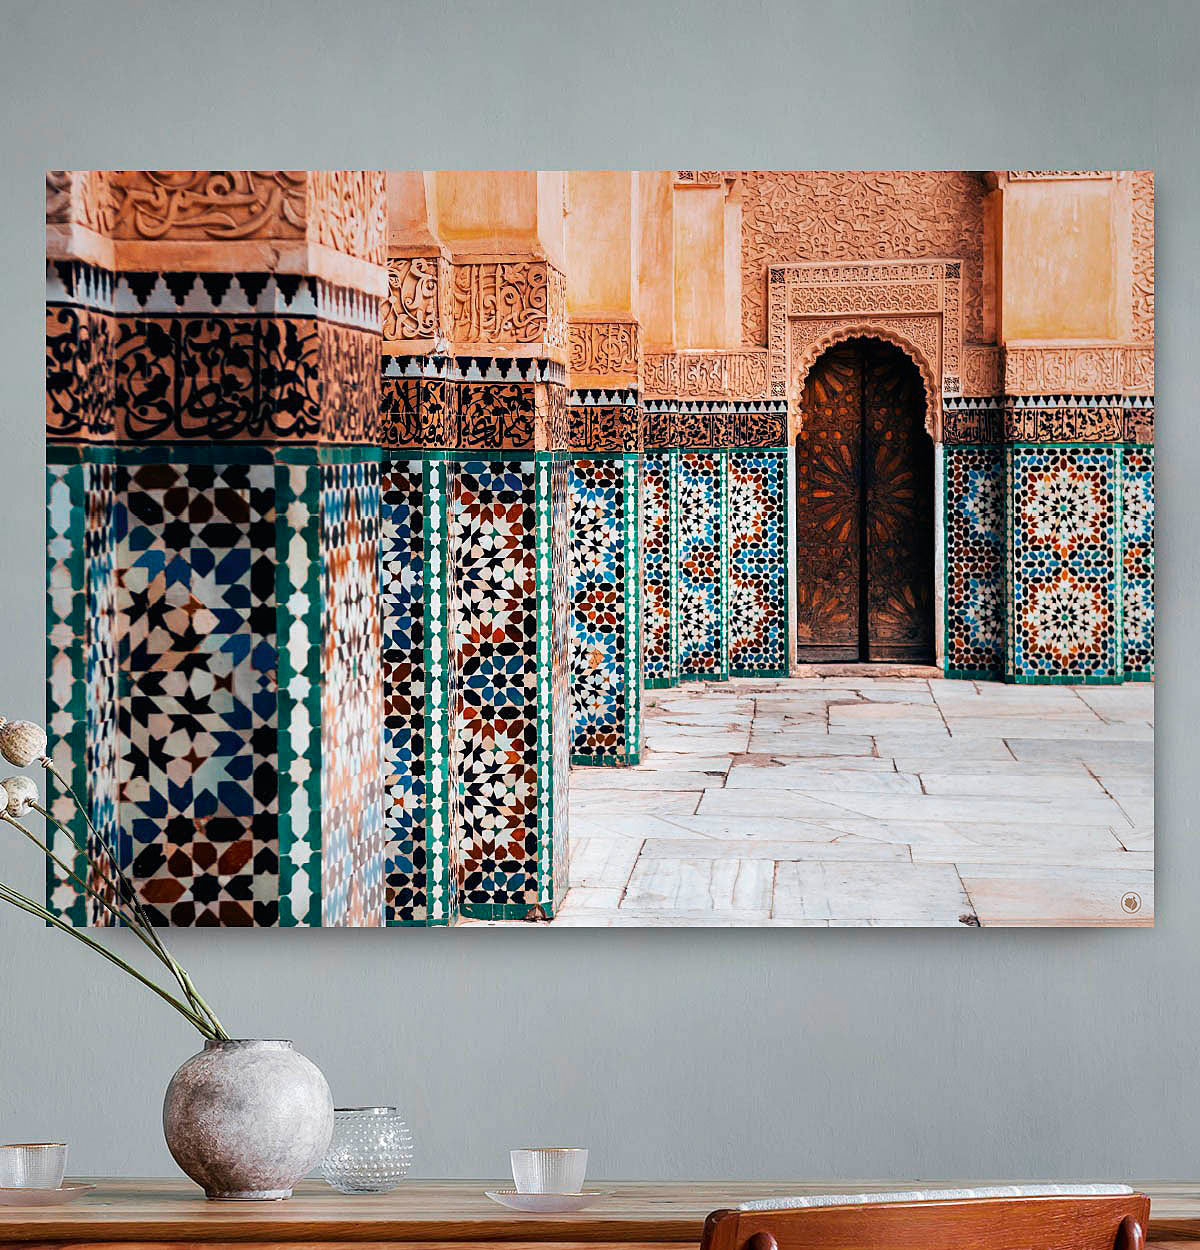 Vierkante wanddecoratie met een gebouw in Marrakesh erop afgebeeld.